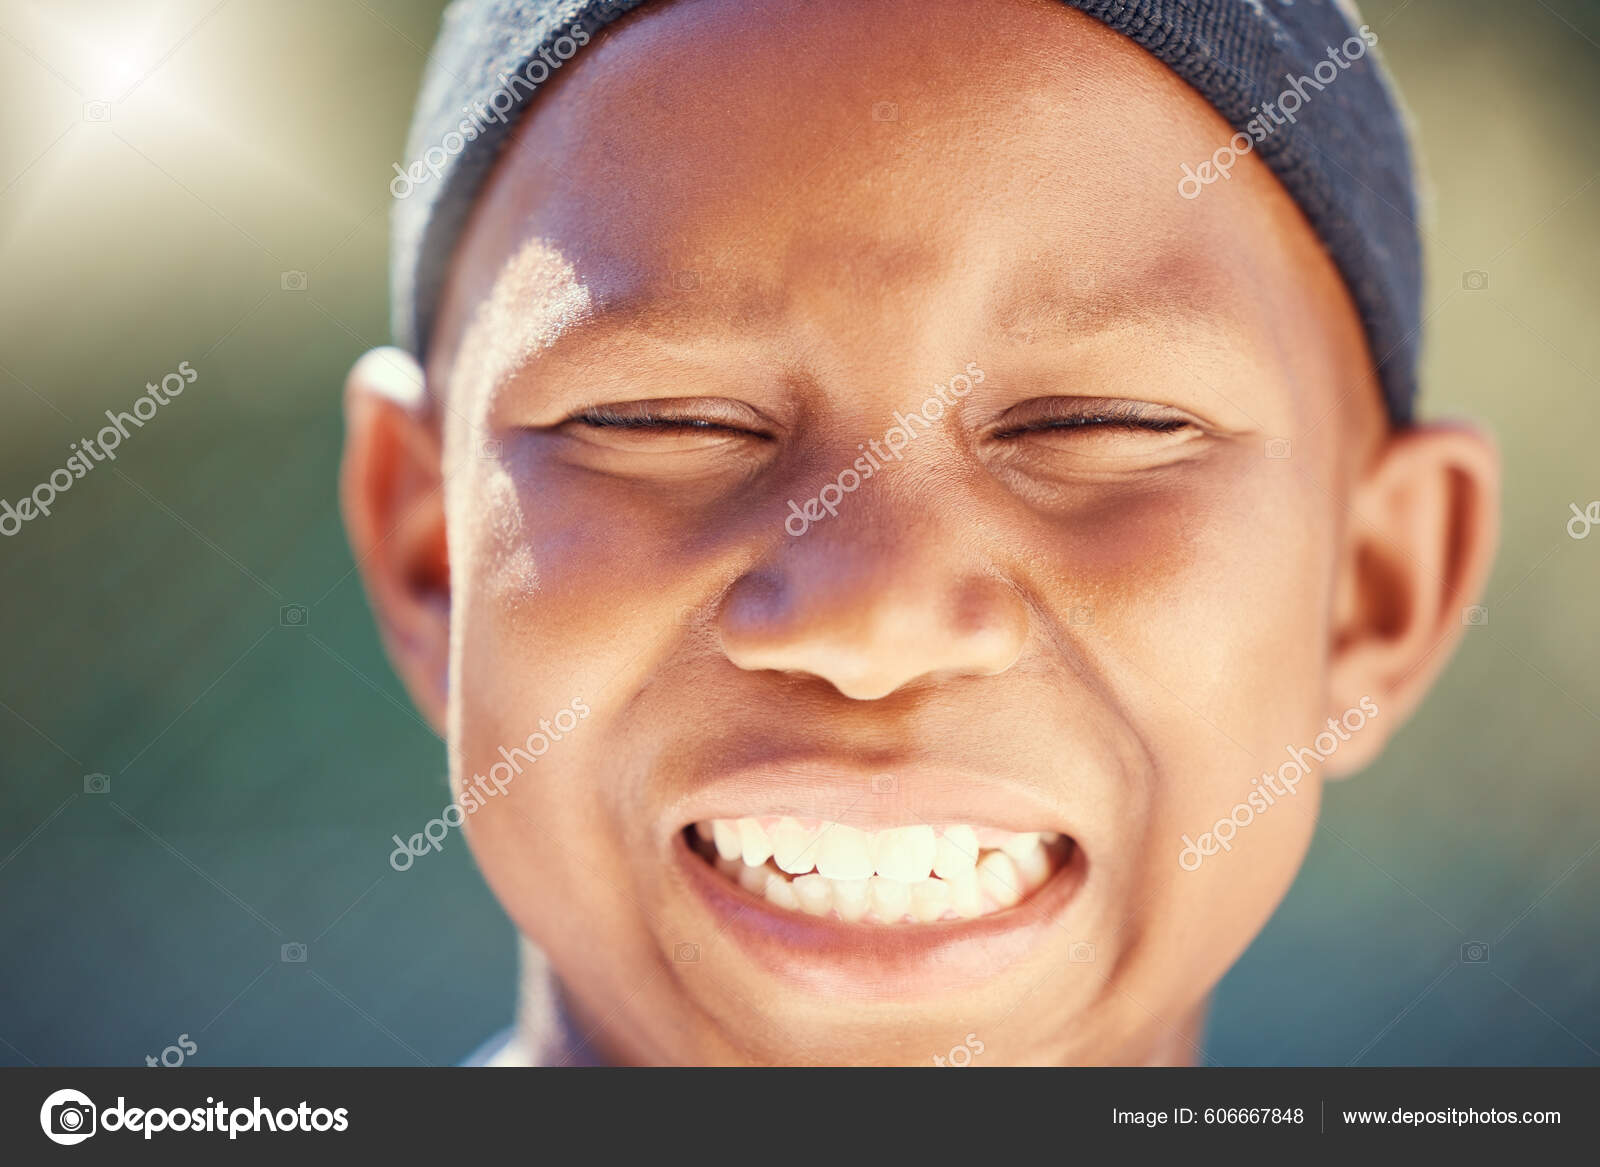 Kind Smiling Boy Face (Black)